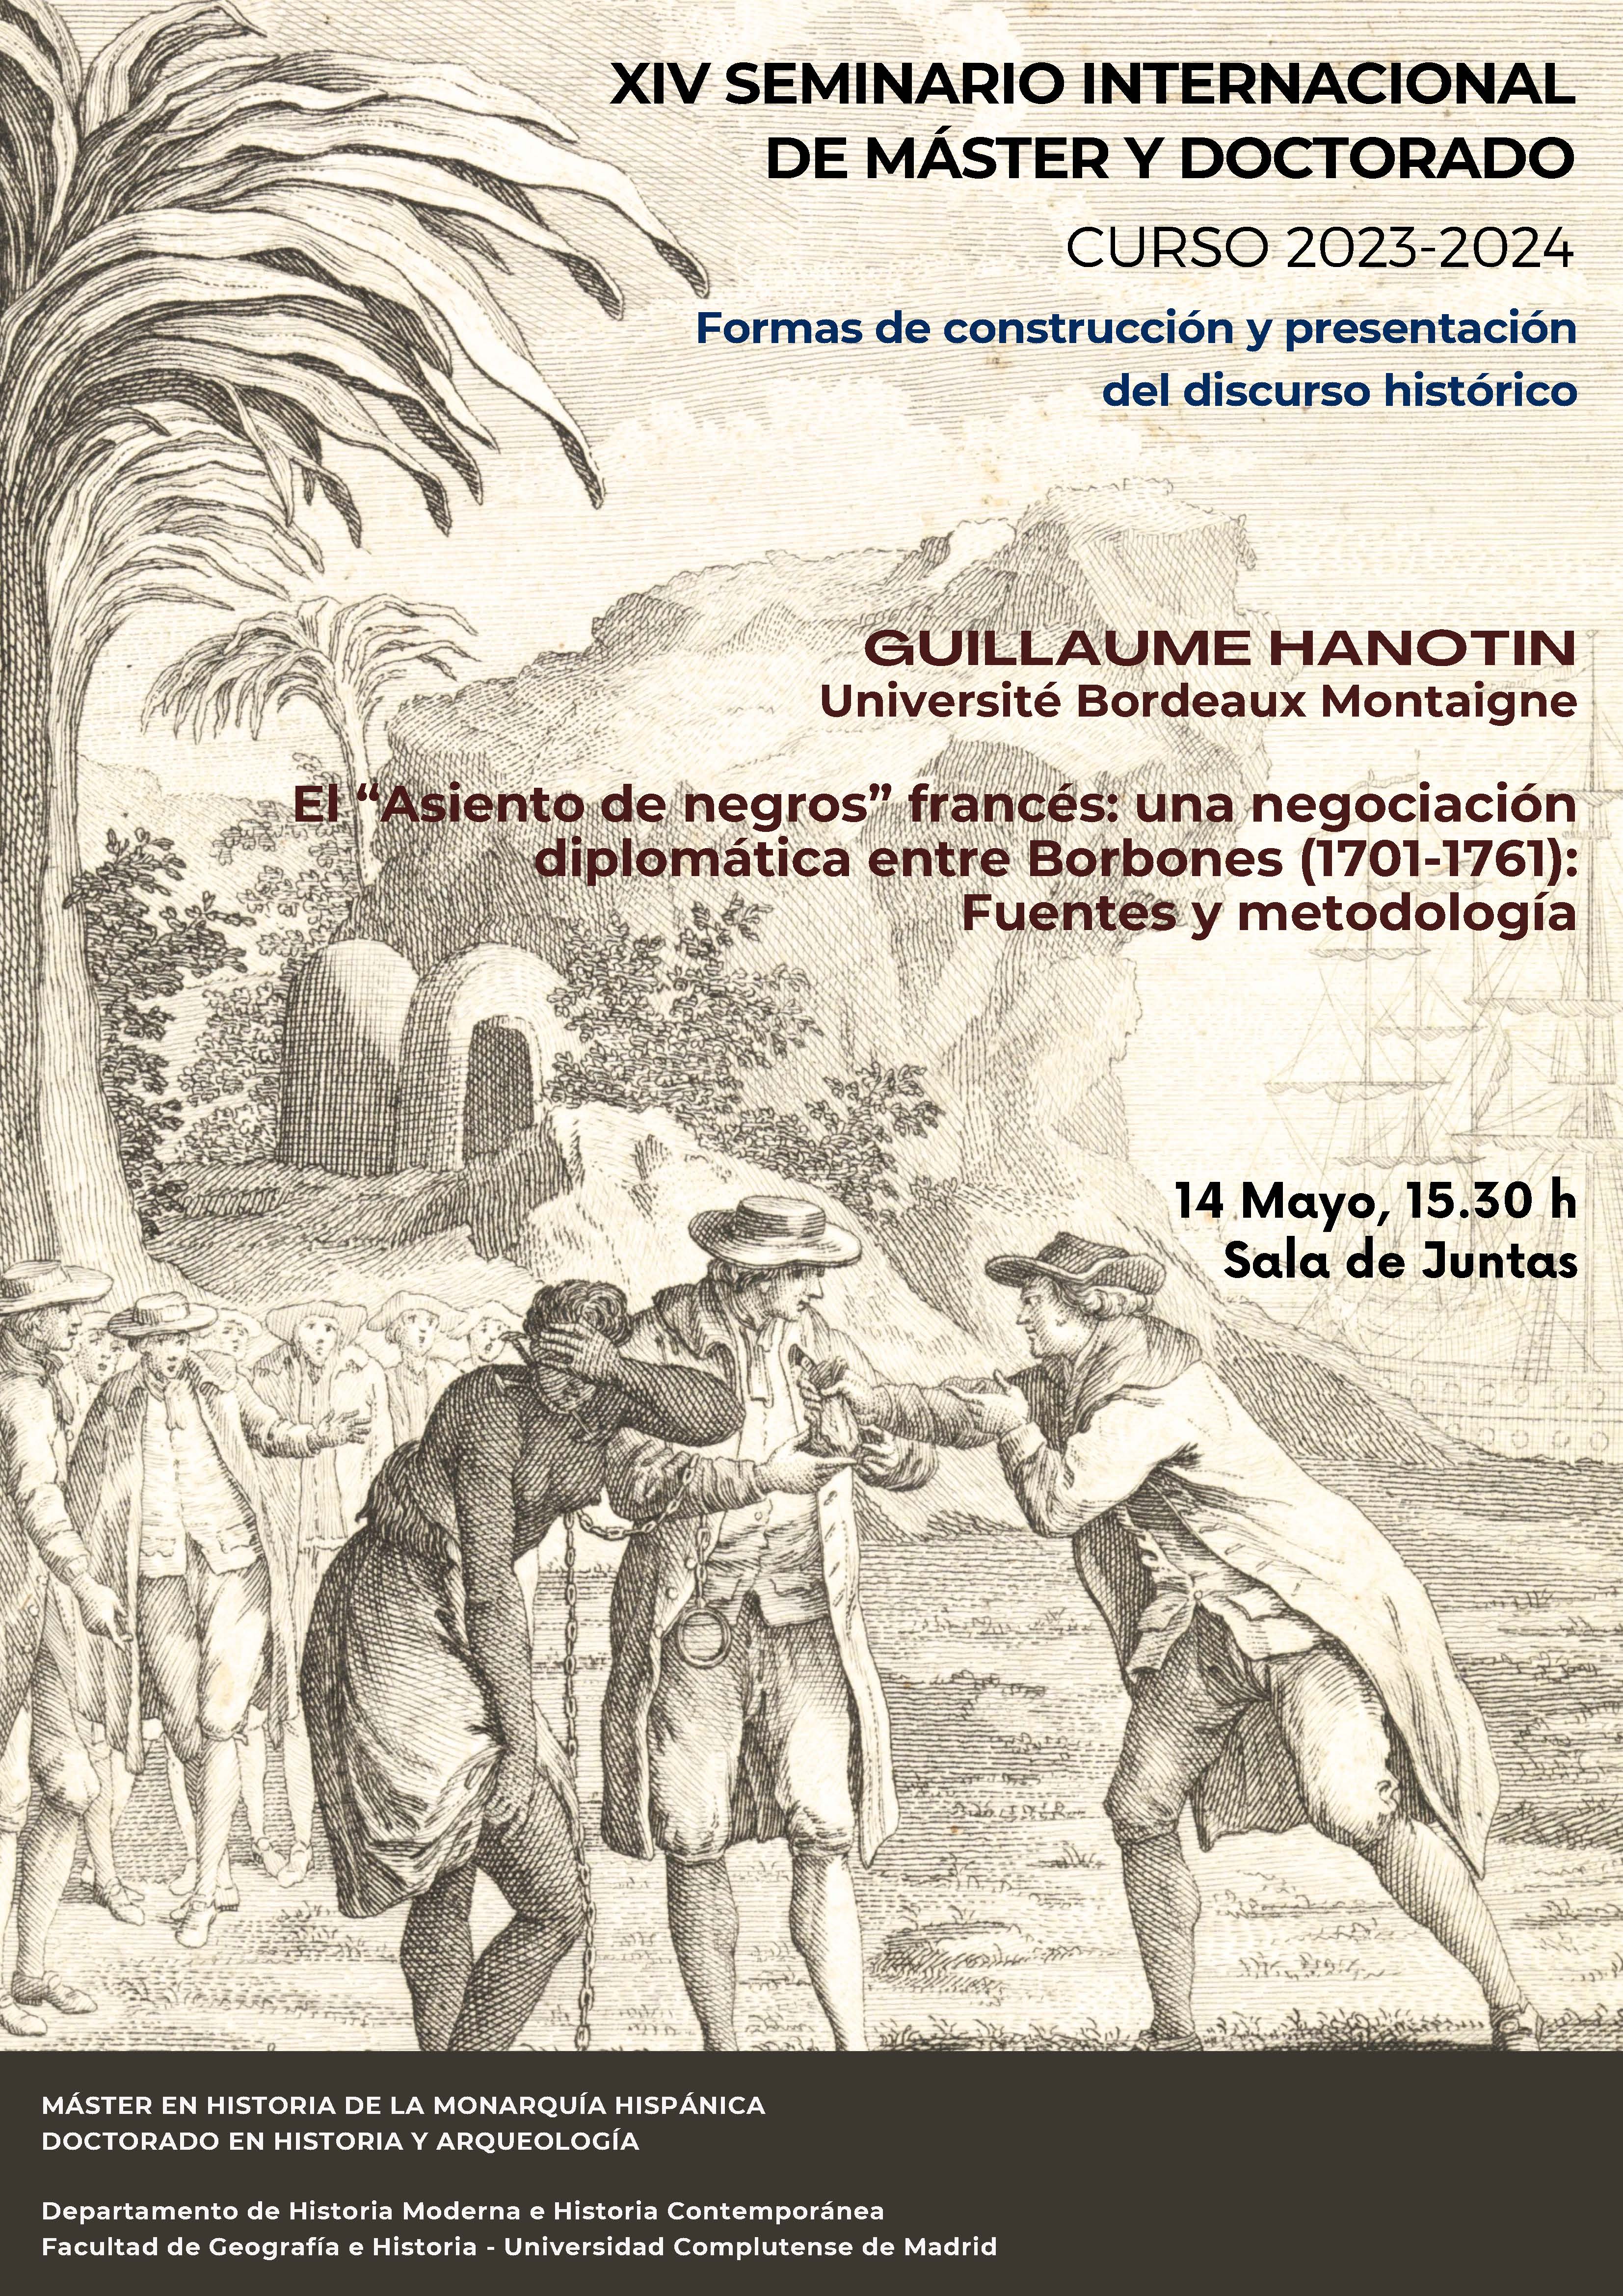 XIV Seminario Internacional Formas de construcción y presentación del discurso histórico 2023-2024 (5ª sesión) - Guillaume Hanotin 14.05.2024